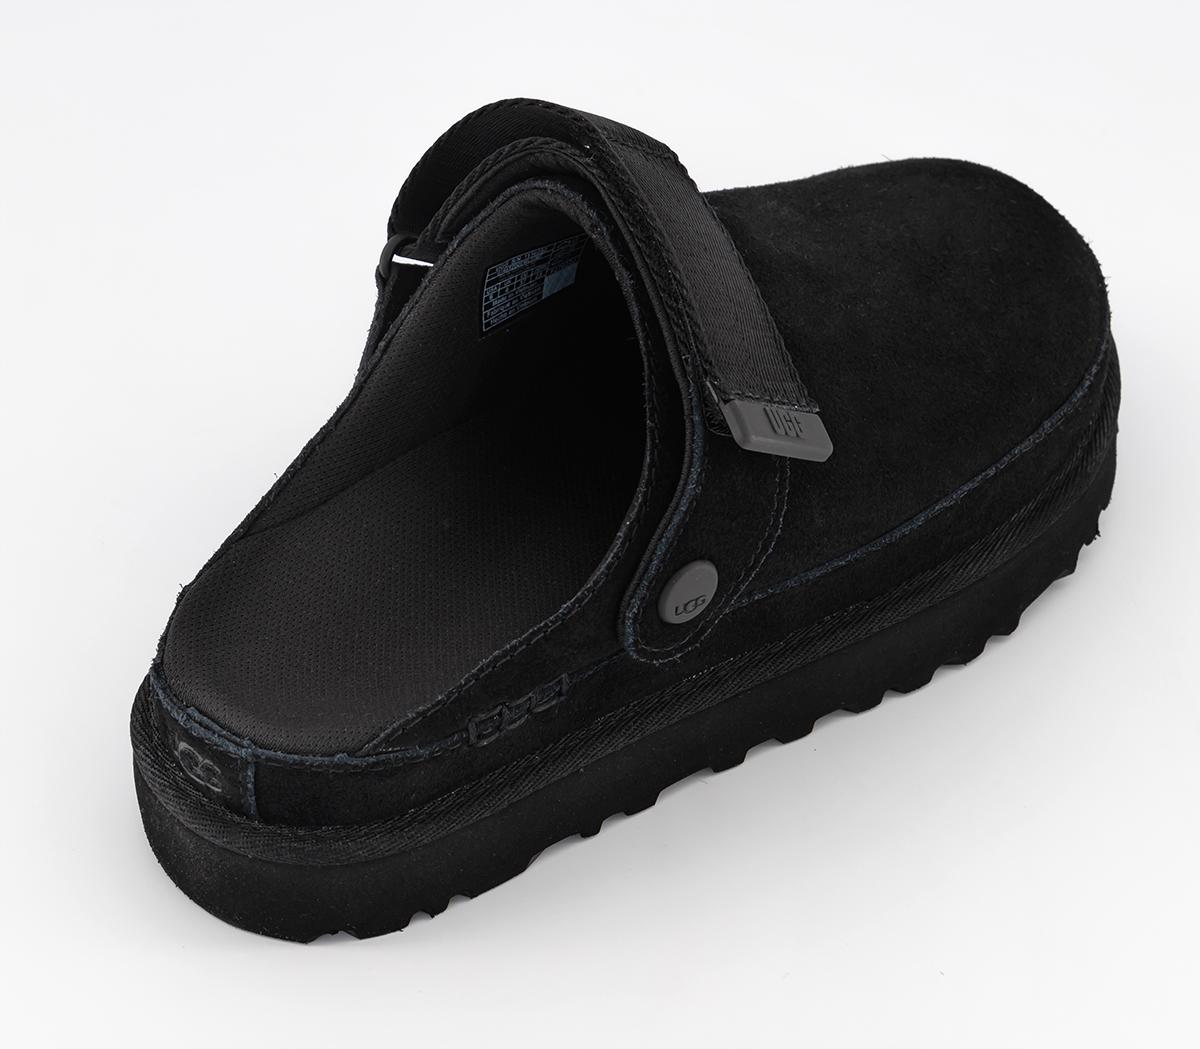 UGG Goldenstar Clogs Black - Flat Shoes for Women